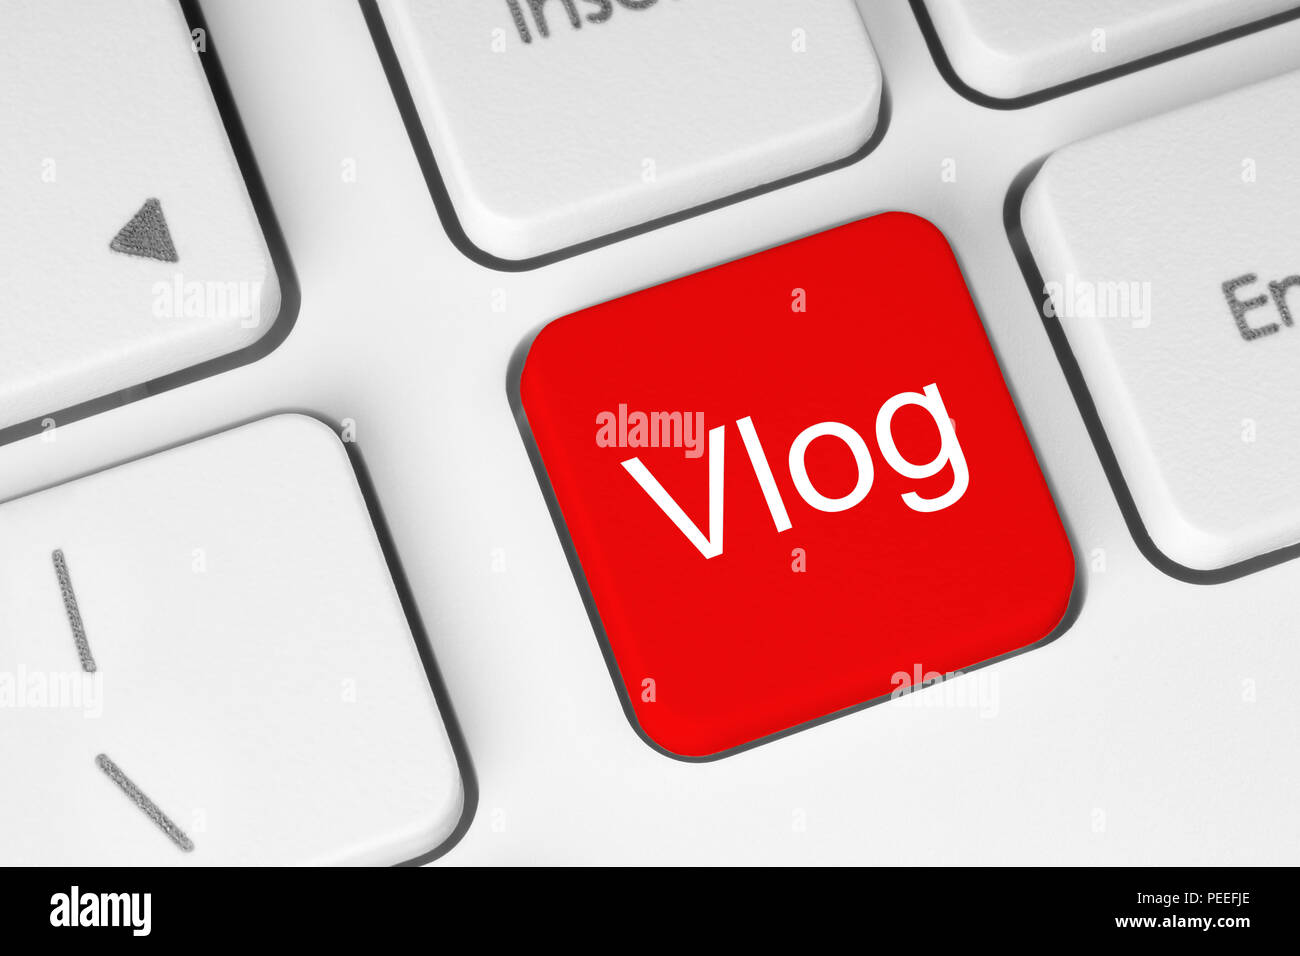 Bouton rouge avec Vlog mot sur le clavier, close-up Banque D'Images